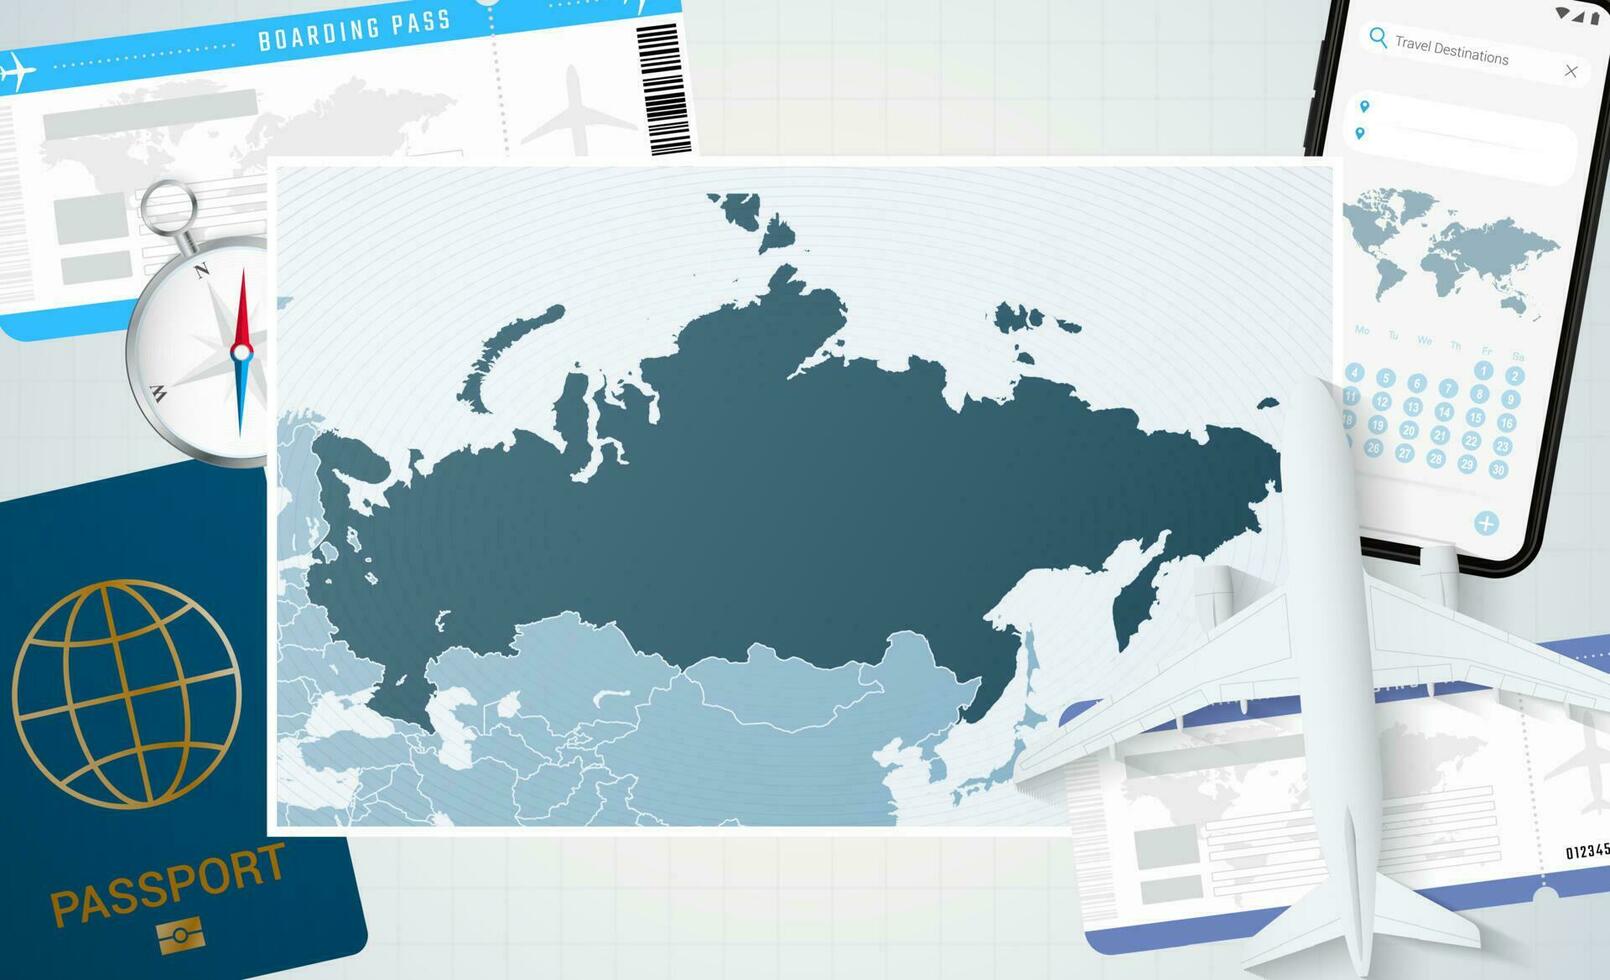 périple à Russie, illustration avec une carte de Russie. Contexte avec avion, cellule téléphone, passeport, boussole et des billets. vecteur